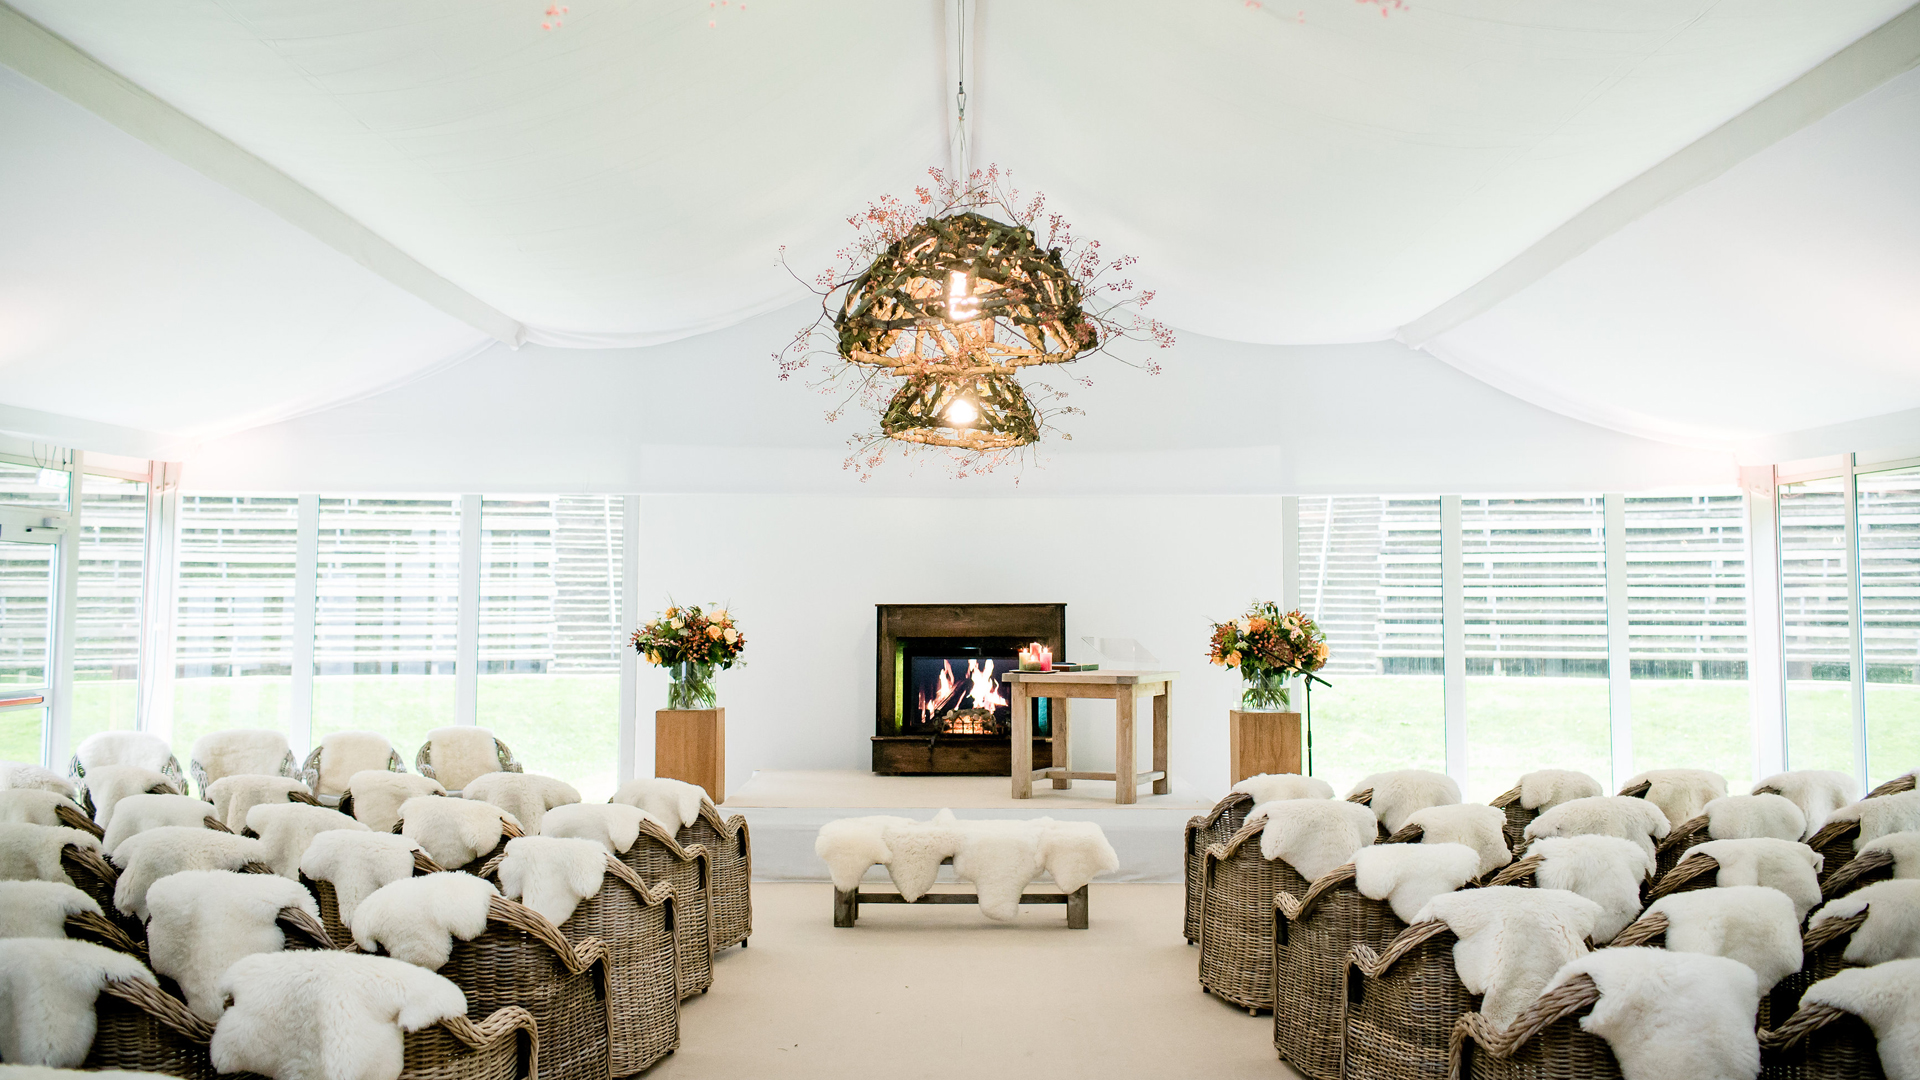 Hochzeitszelt als Hochzeitslocation für Trauung in weiß und Hochzeitsfeier von Zeltverleih Intersettle - Alu Pavillon mit weißem Innenhimmel als Dachverkleidung